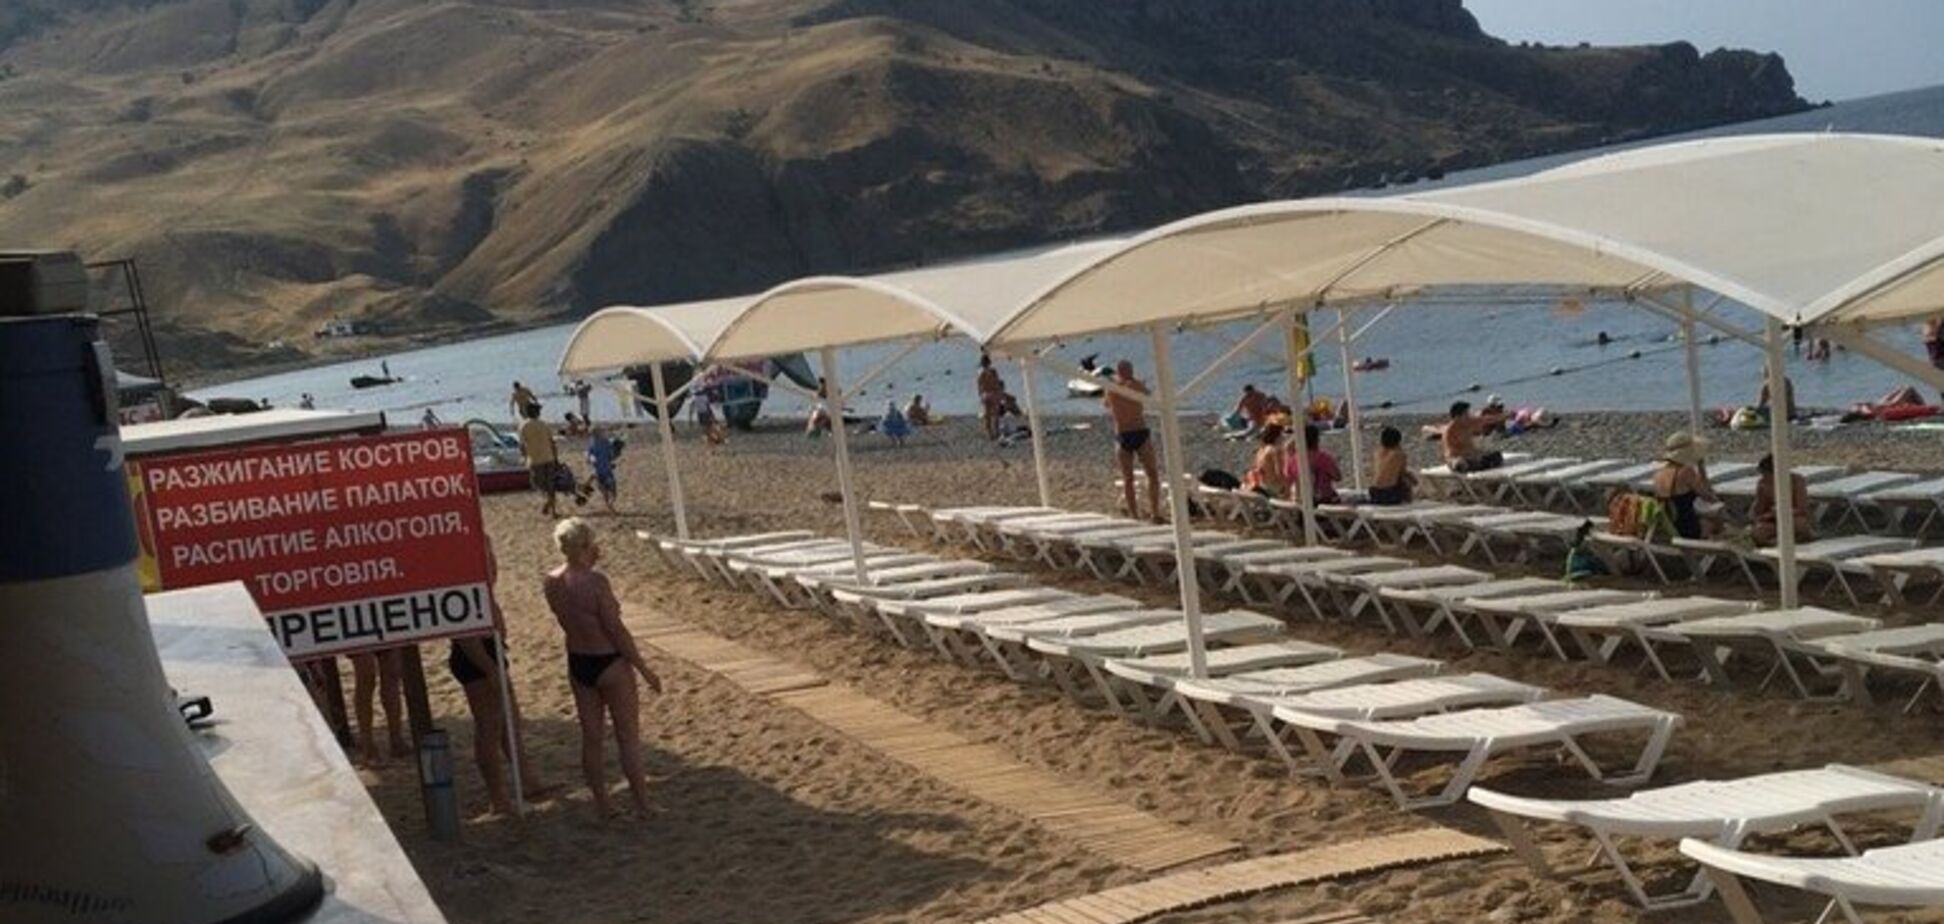 'Затоптані туристи!' Блогер показала, як в сезон виглядають пляжі Криму